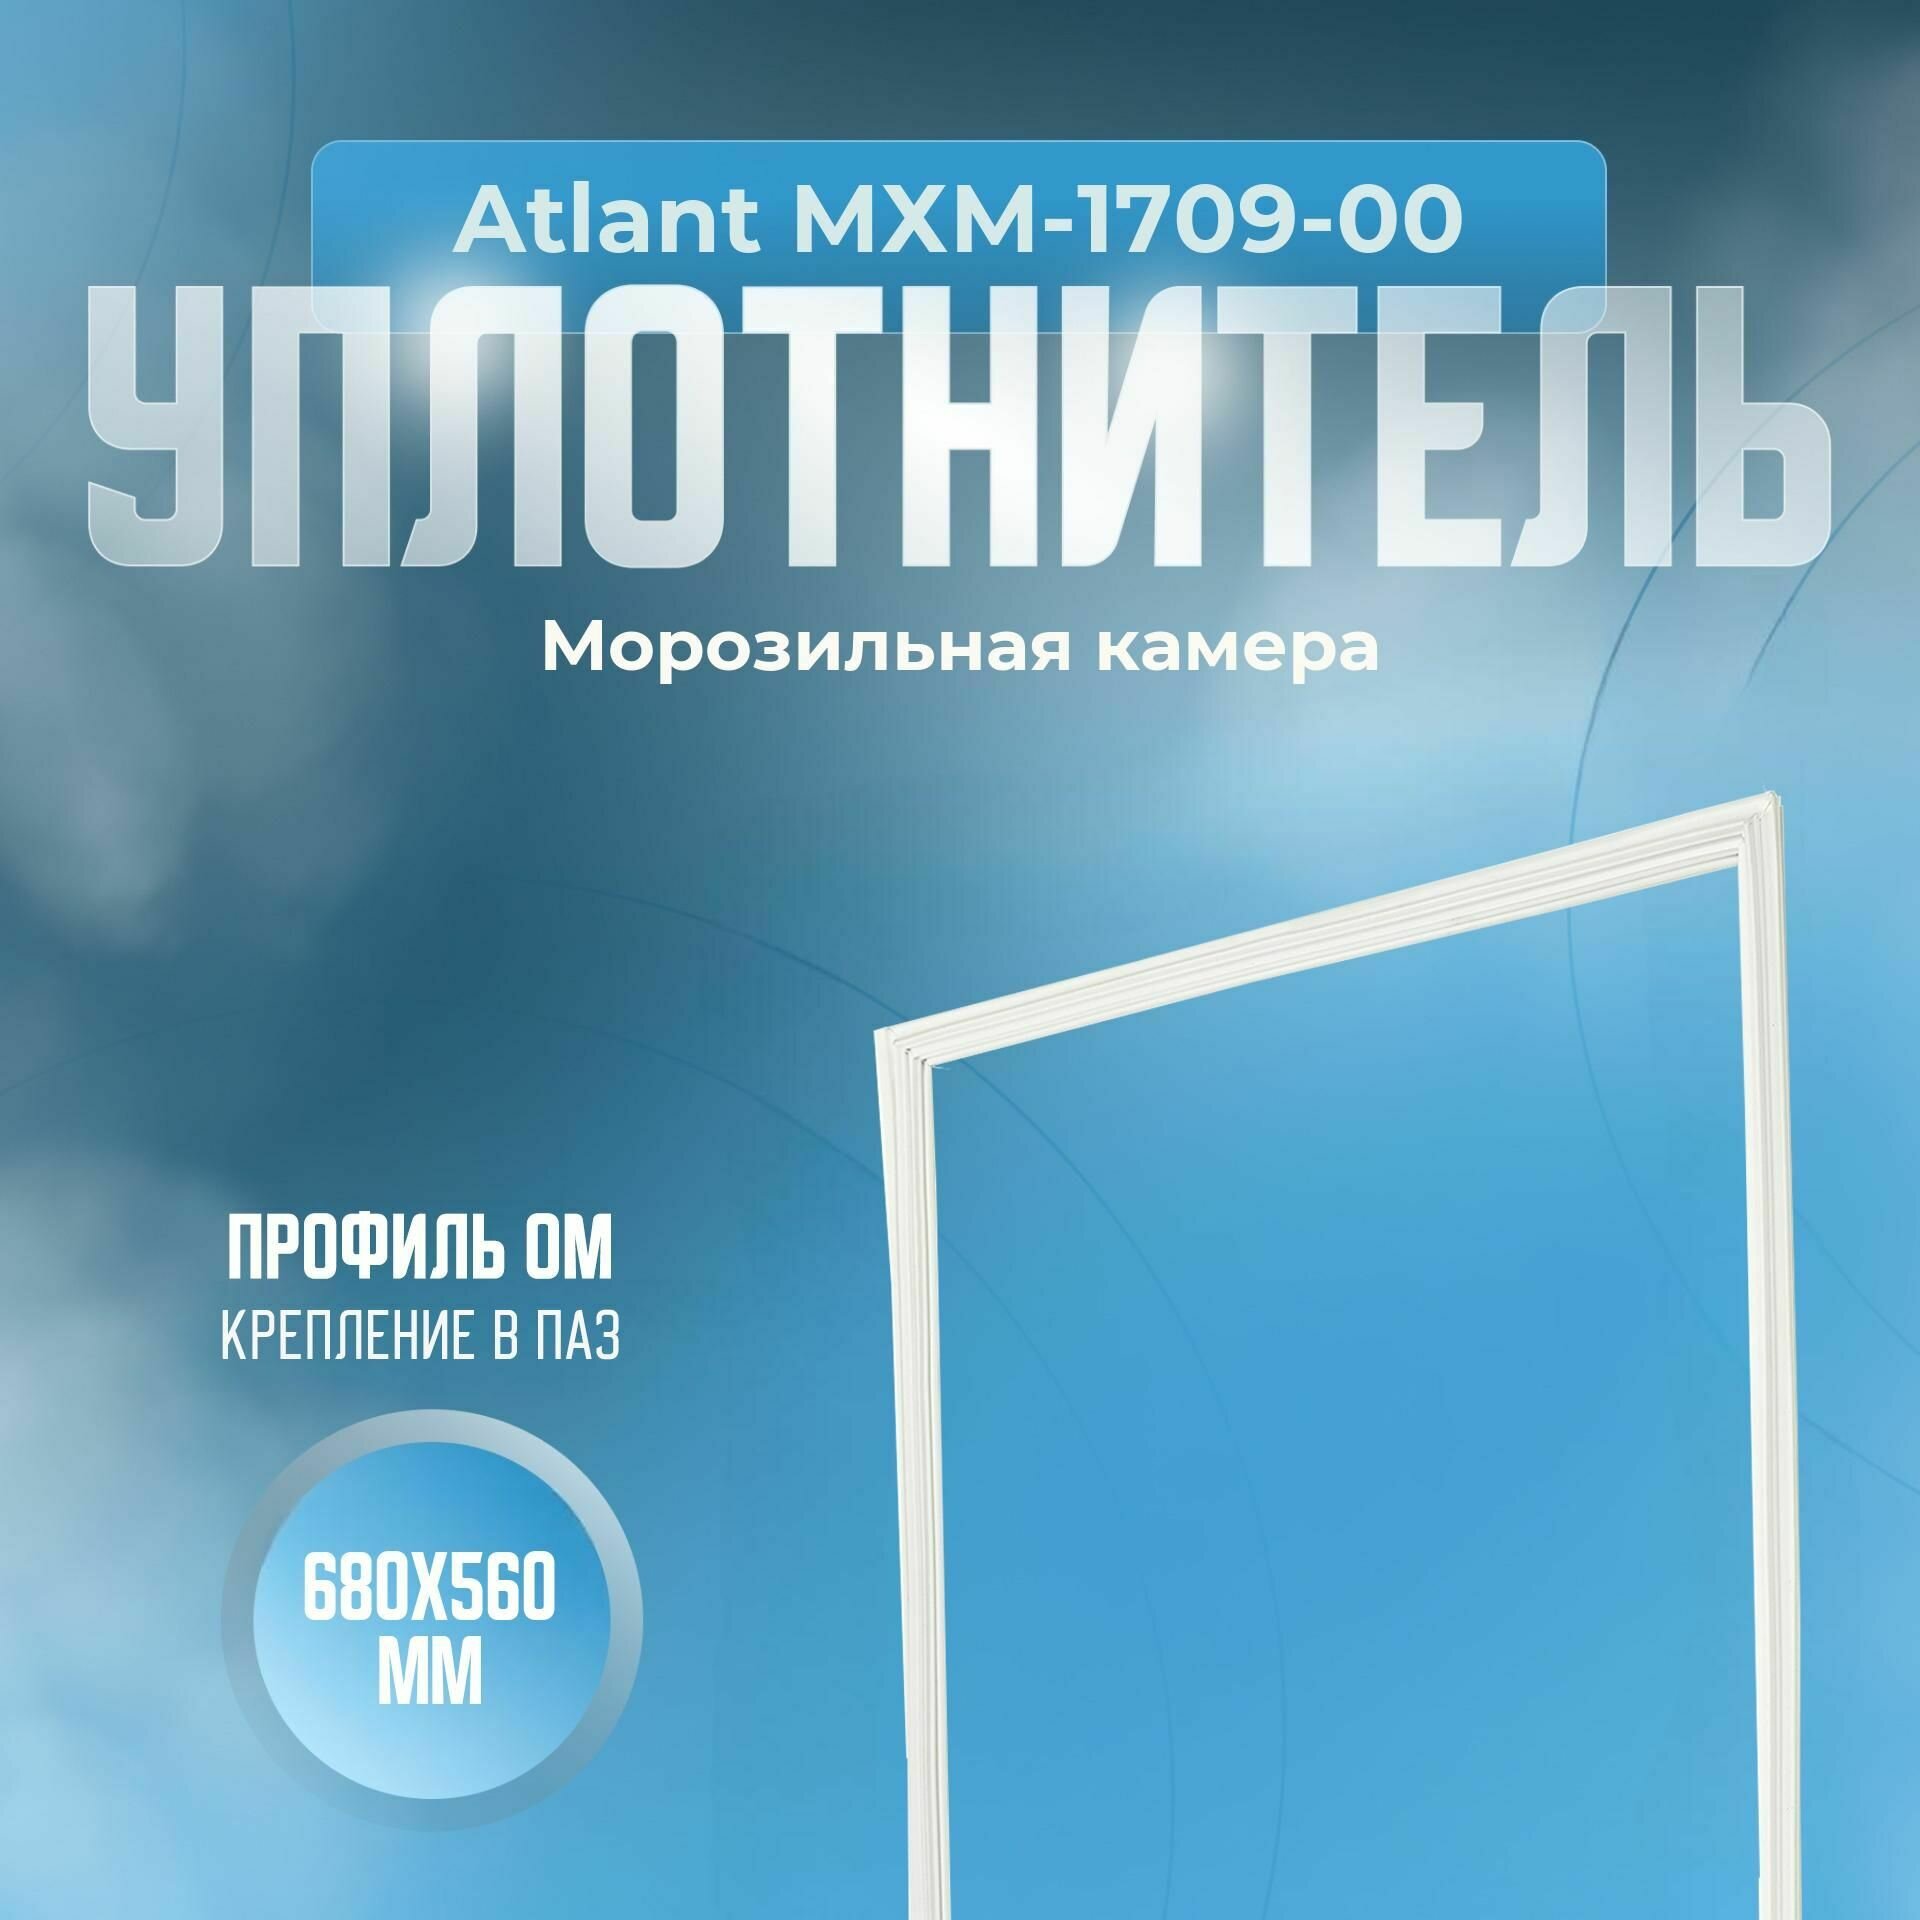 Уплотнитель Atlant МХМ-1709-00. м. к, Размер - 680x560 мм. ОМ